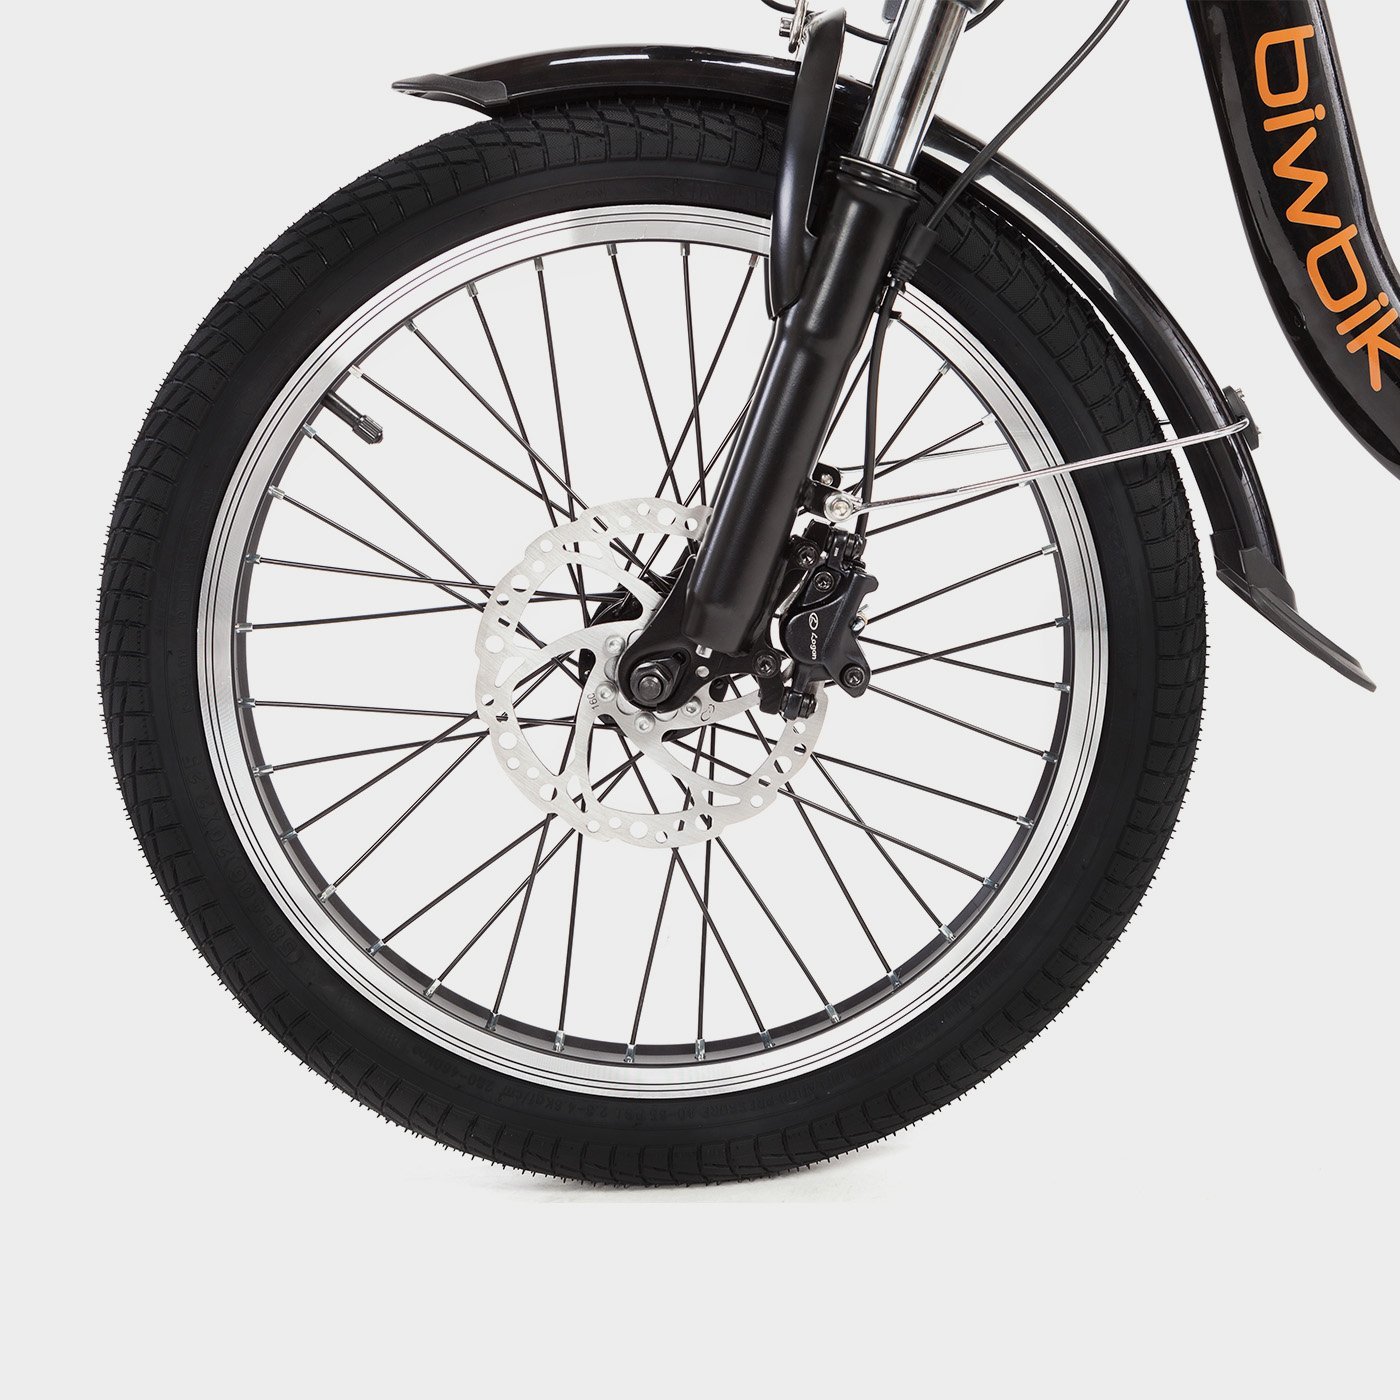 Boston black folding electric bike